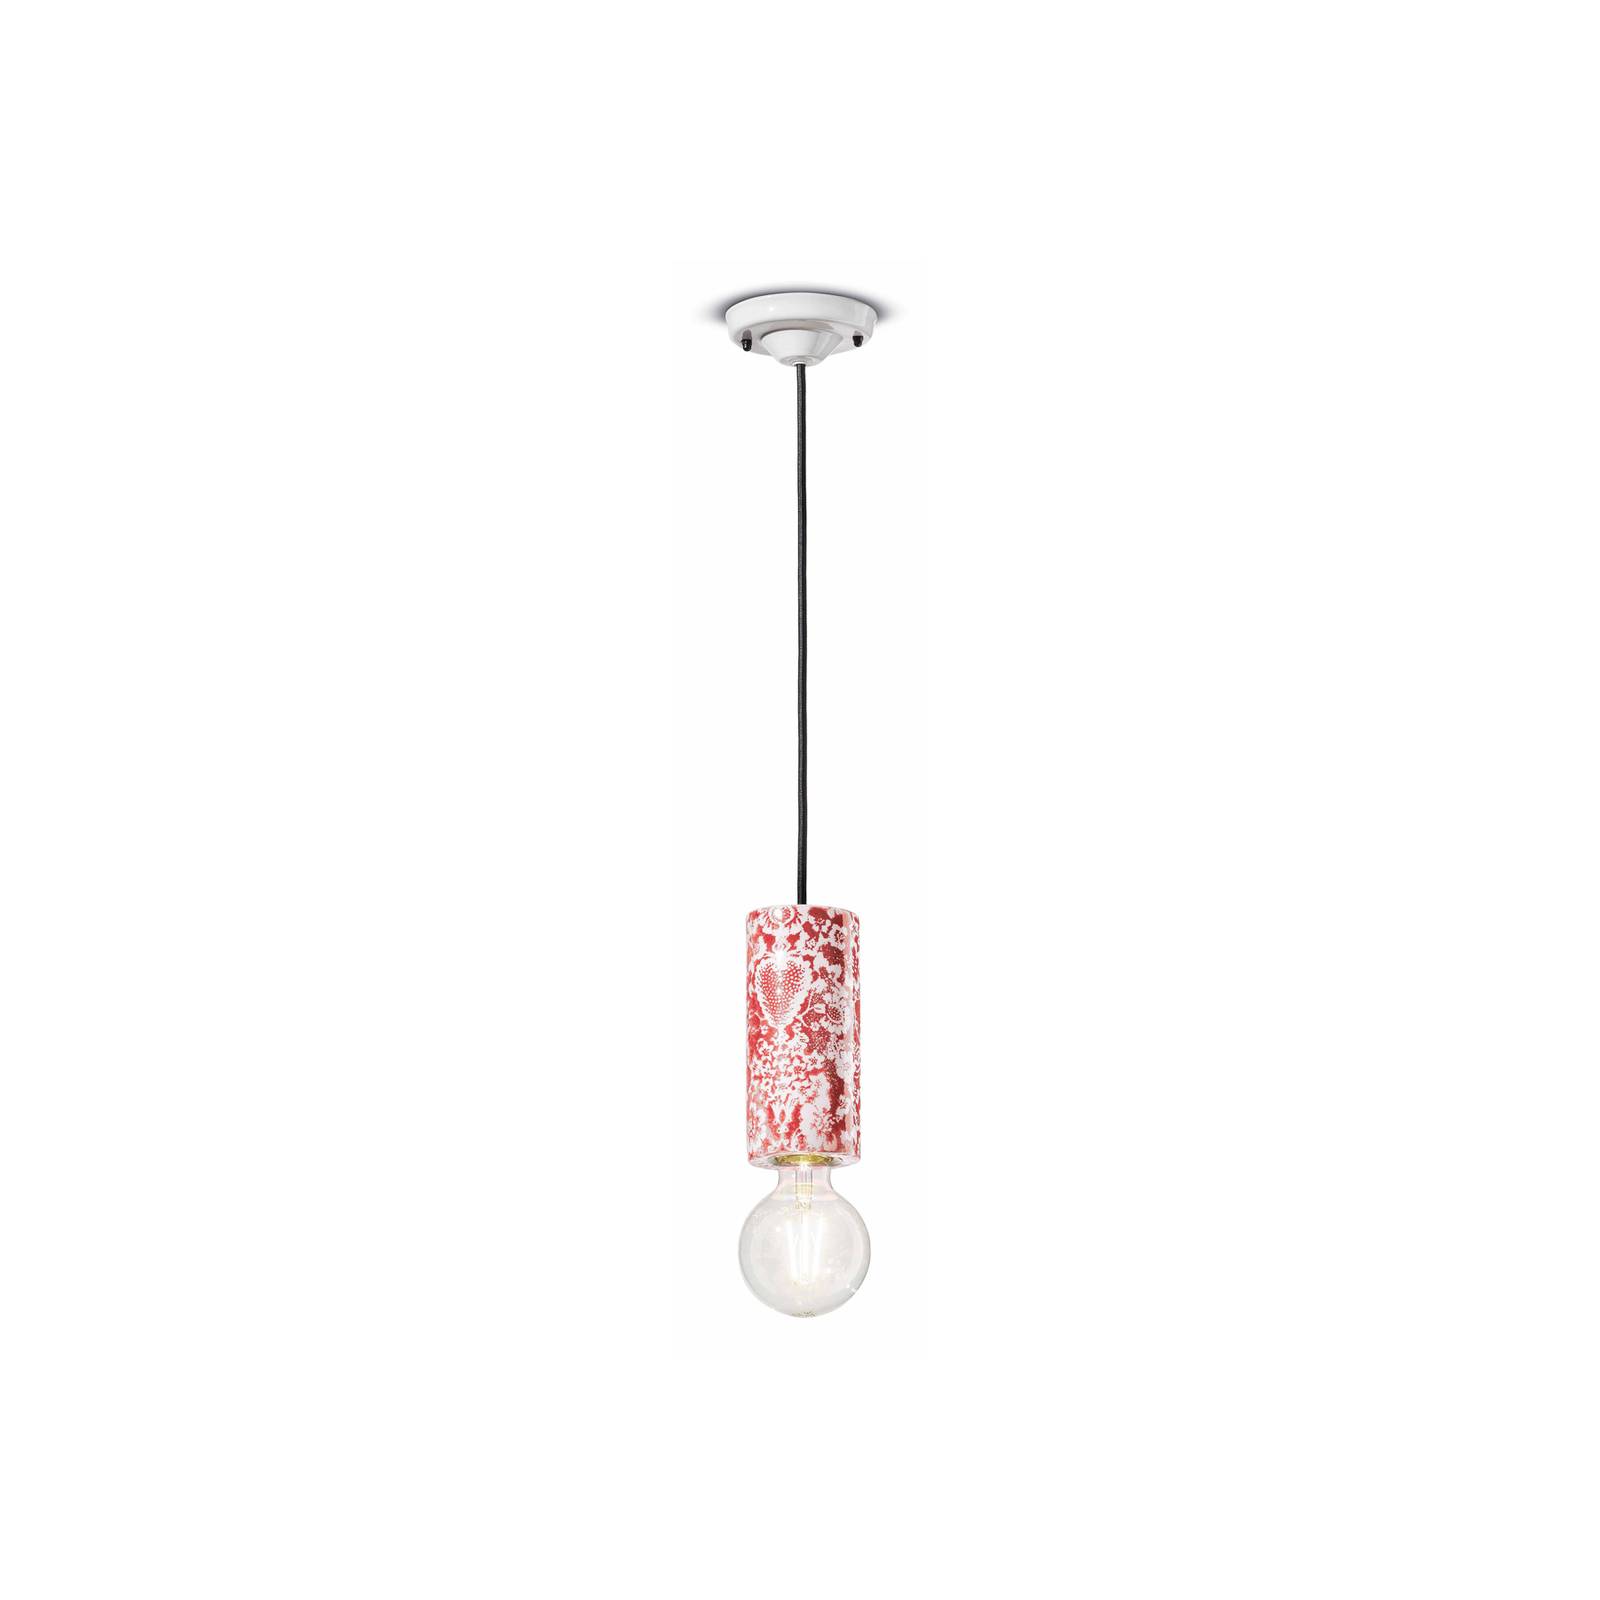 E-shop PI závesná lampa, kvetinový vzor Ø 8 cm červená/biela